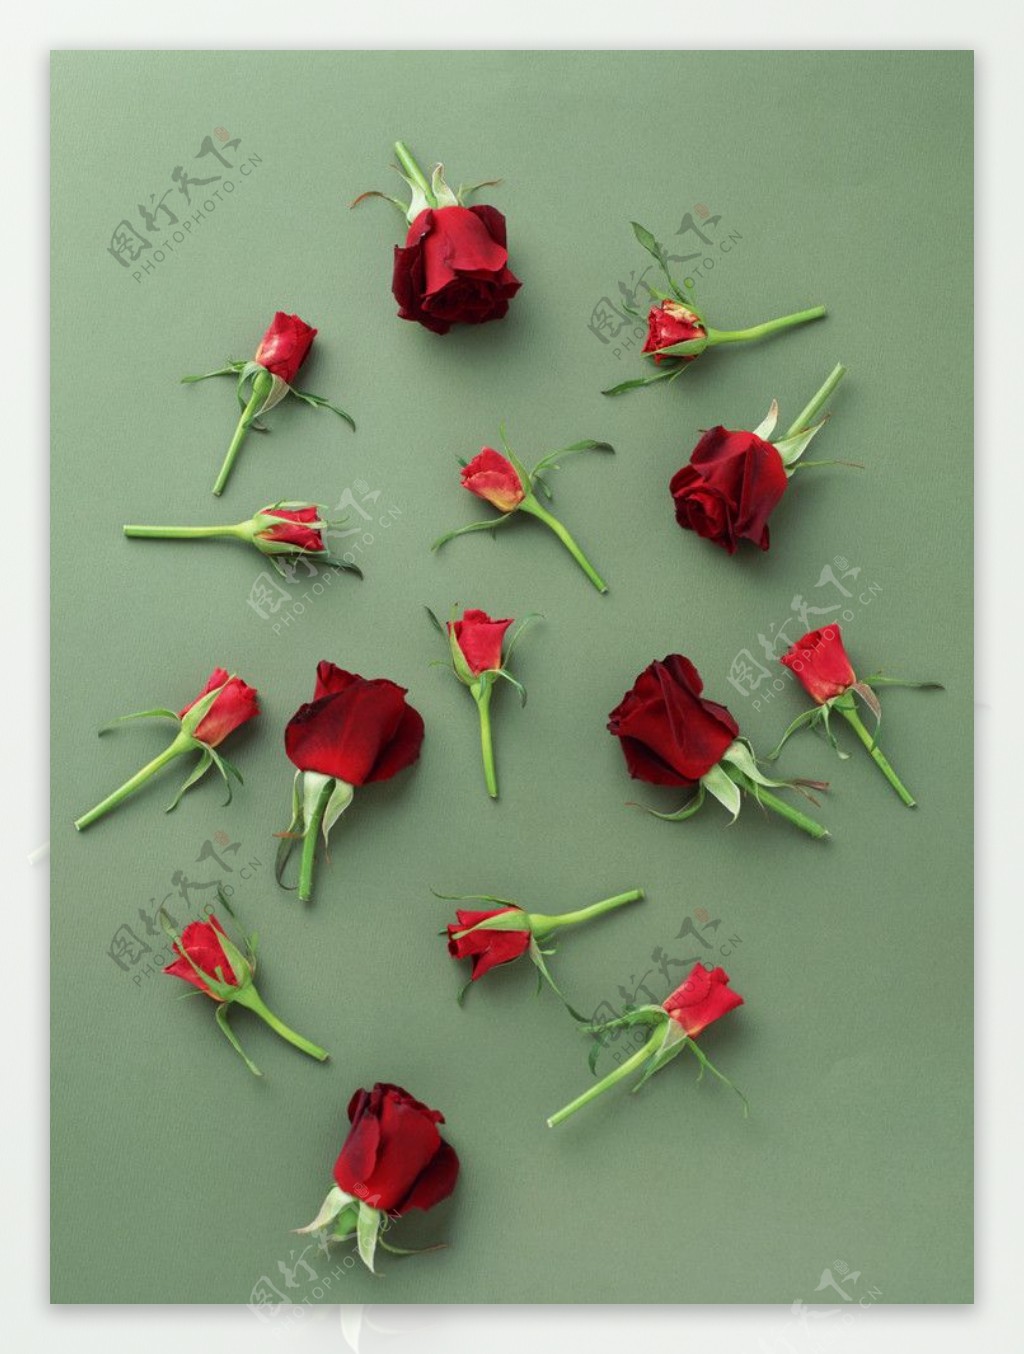 散落满地的玫瑰花图片